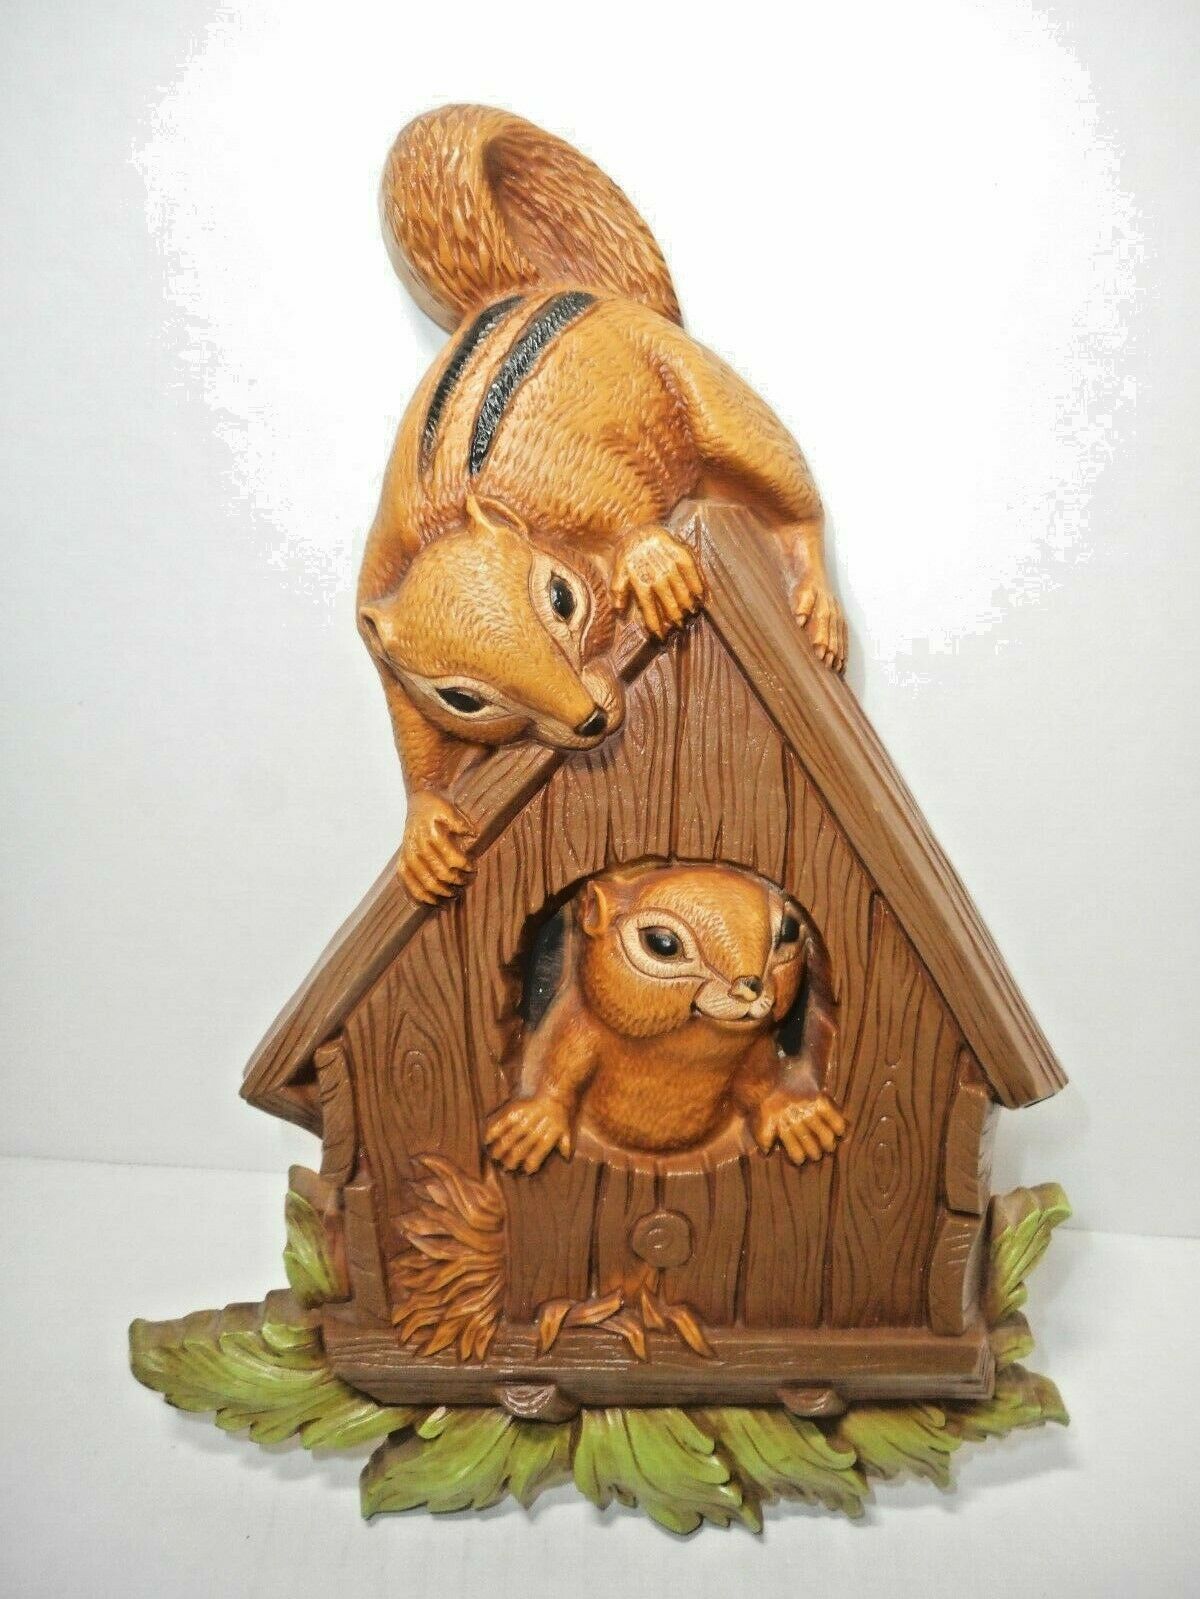 Home Interior Squirrel Chipmunk Birdhouse Plaque Wall Art HOMCO 11" Vintage 1977 - $13.53